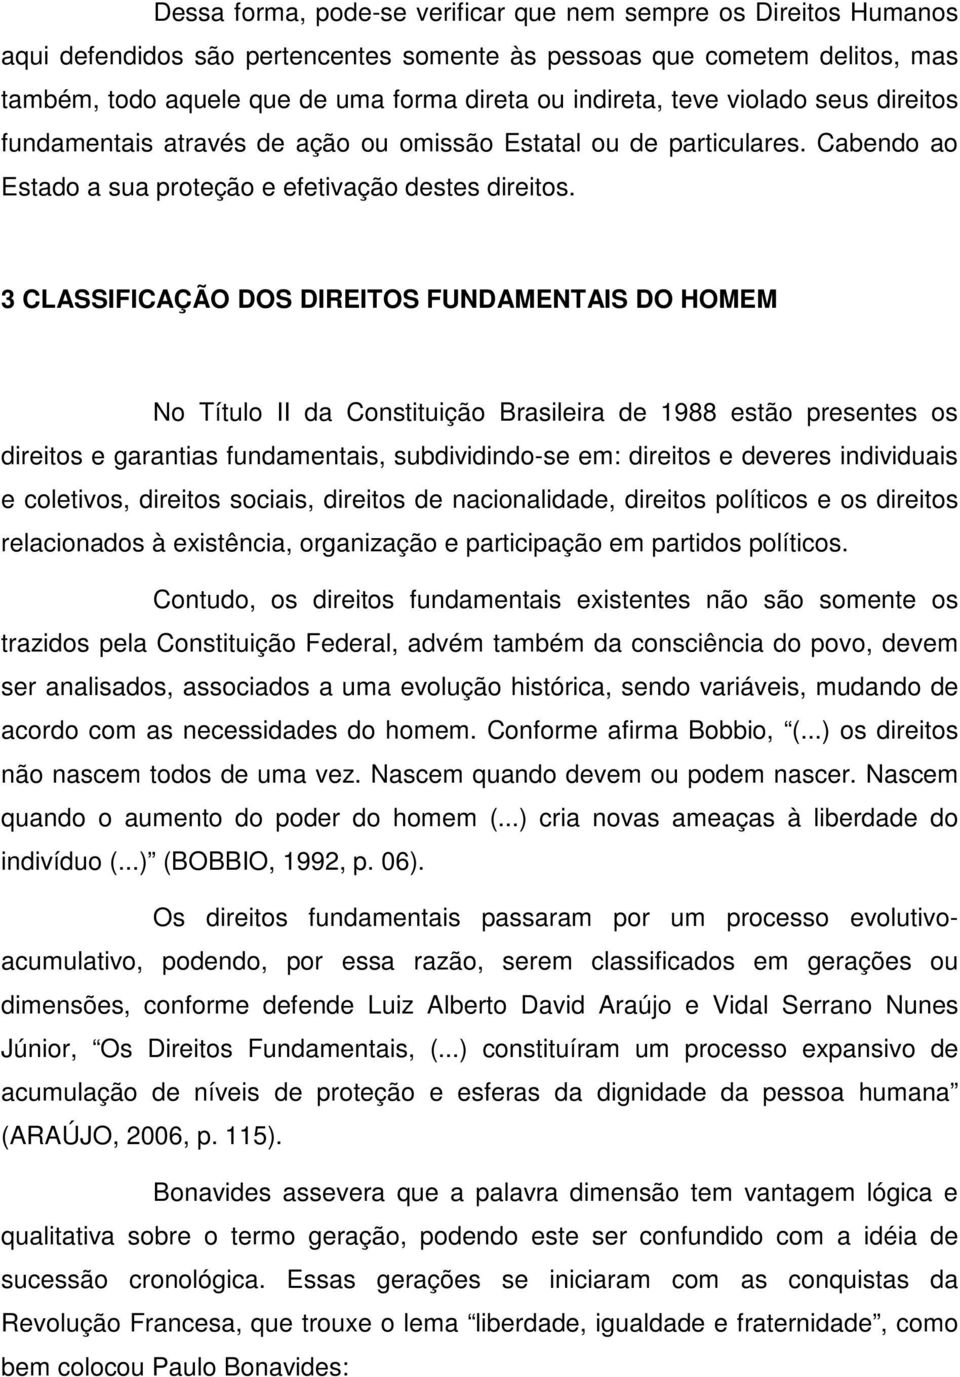 3 CLASSIFICAÇÃO DOS DIREITOS FUNDAMENTAIS DO HOMEM No Título II da Constituição Brasileira de 1988 estão presentes os direitos e garantias fundamentais, subdividindo-se em: direitos e deveres